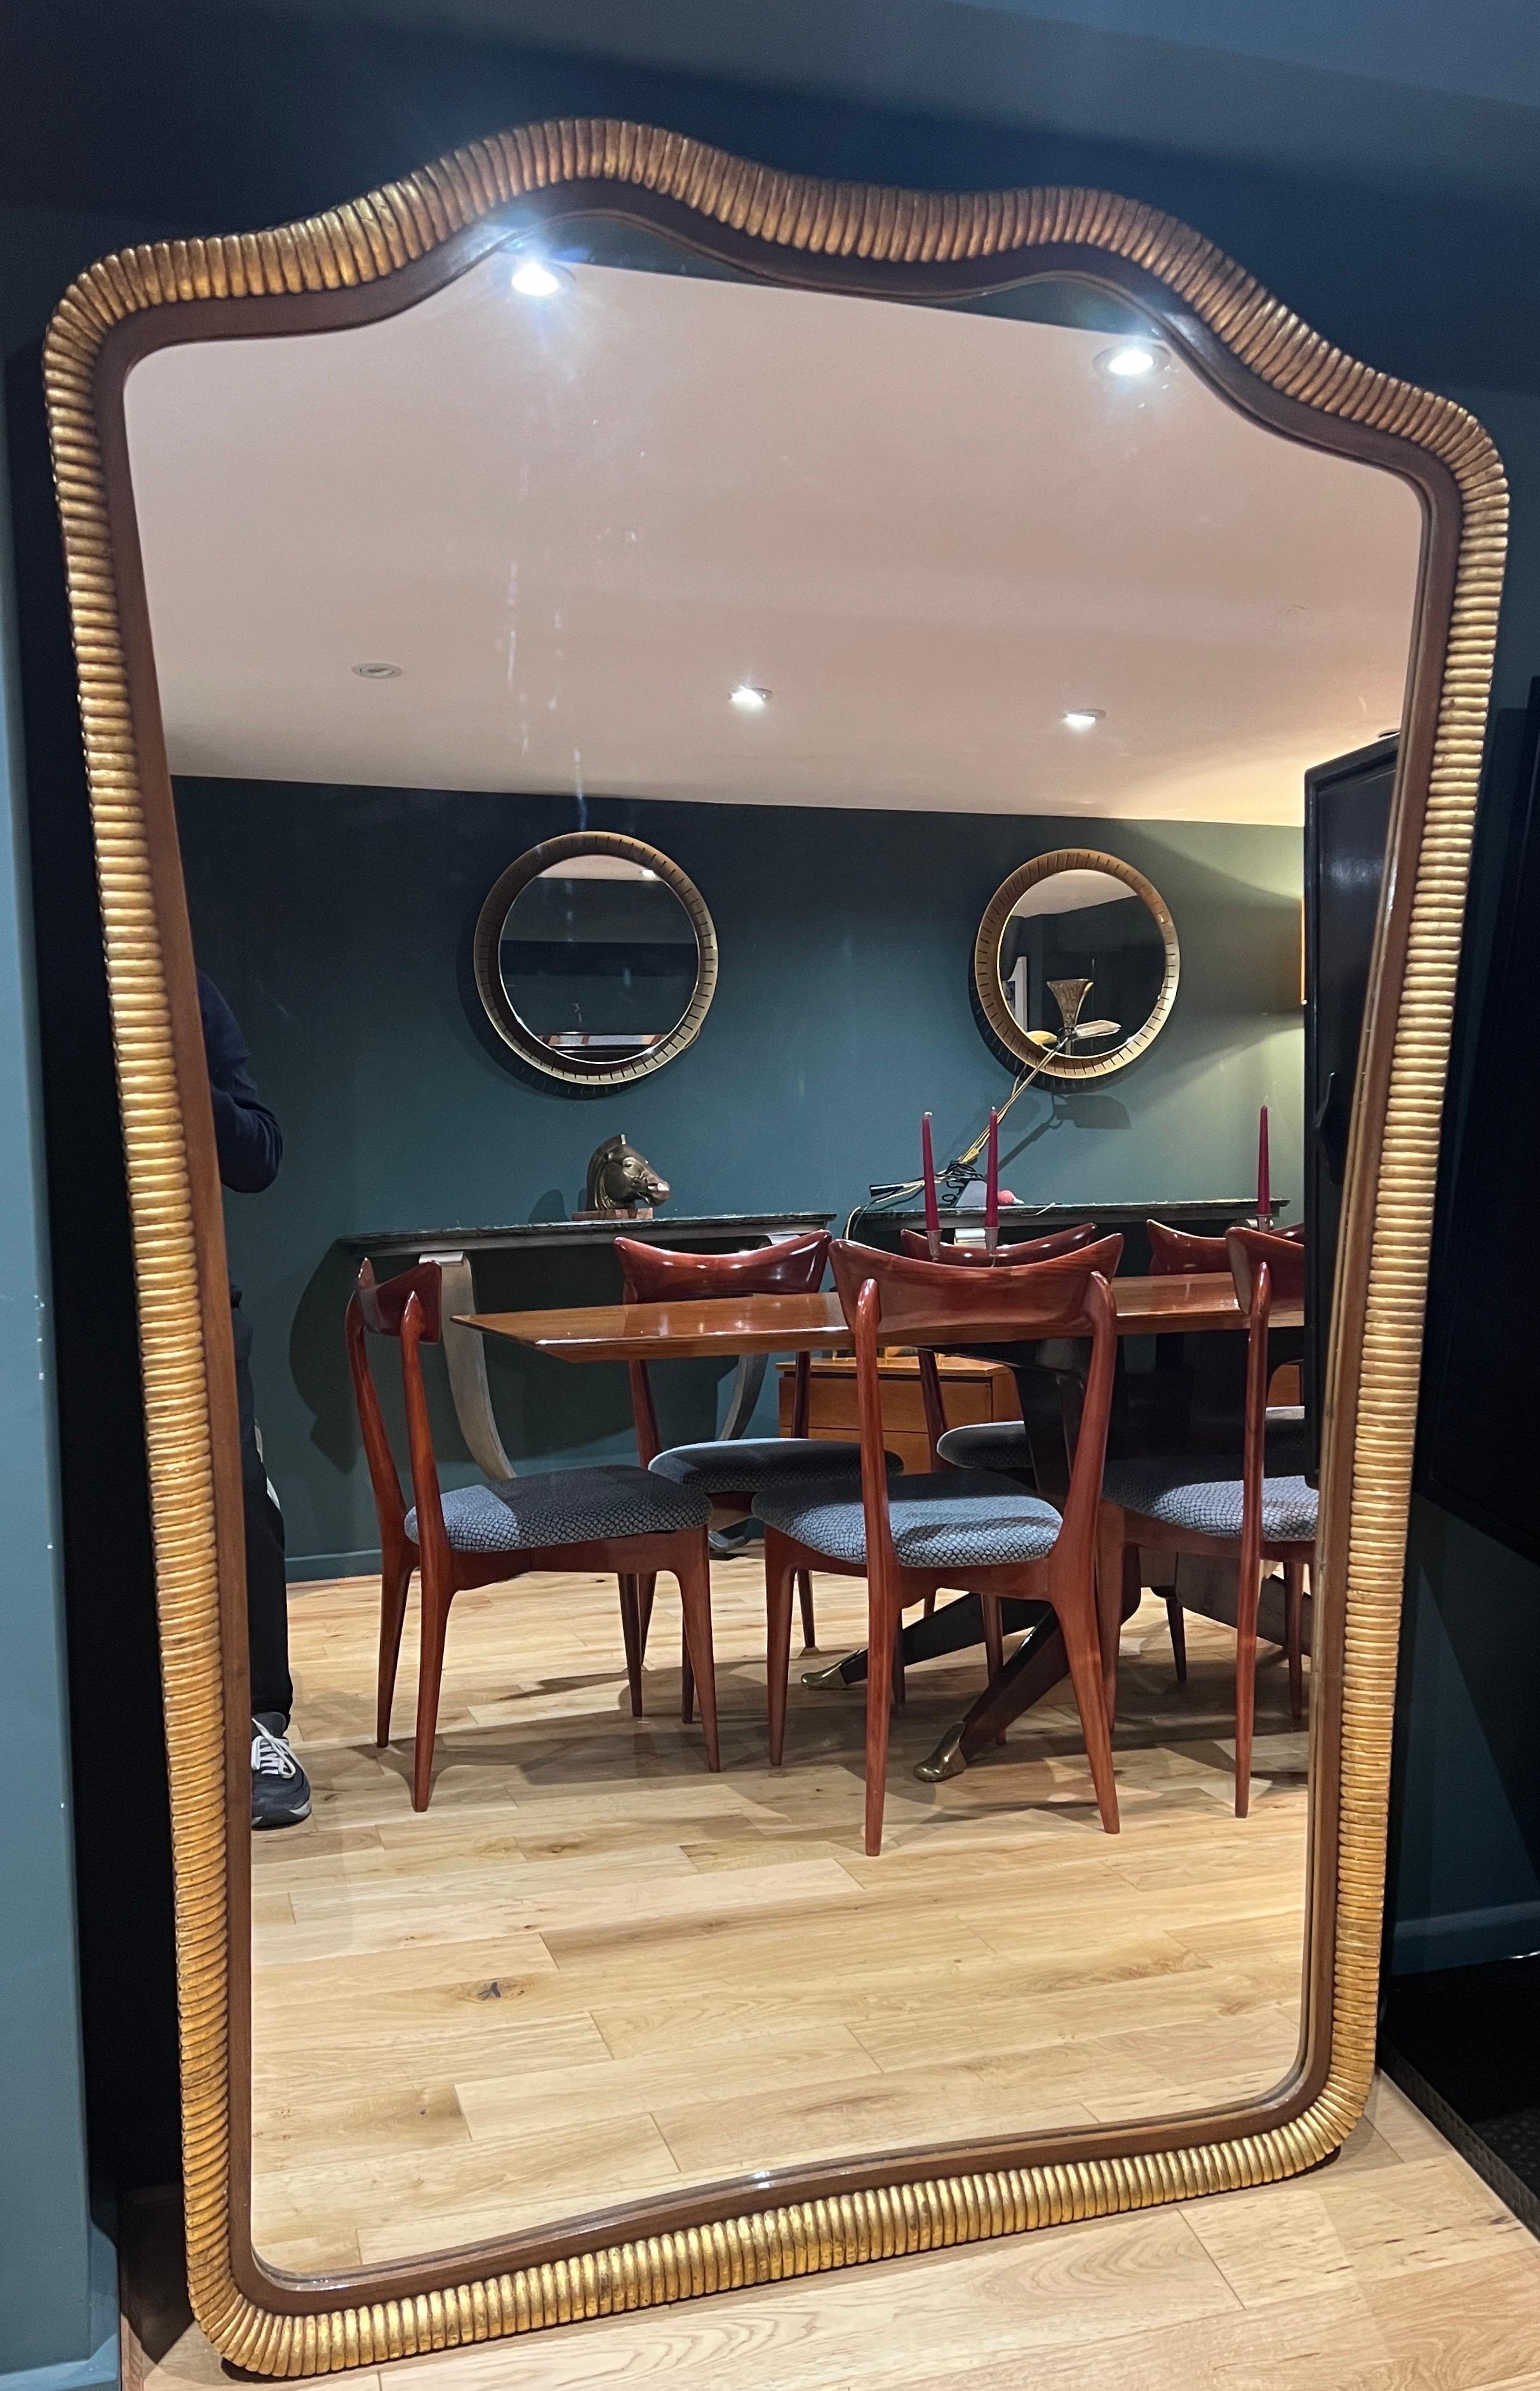 Un extraordinaire grand miroir en bois doré magnifiquement conçu avec des détails de cannelures sur le cadre en fabuleux état.
Une véritable pièce d'apparat pour tous ceux qui recherchent une alternative à un miroir de style classique. 
C1940